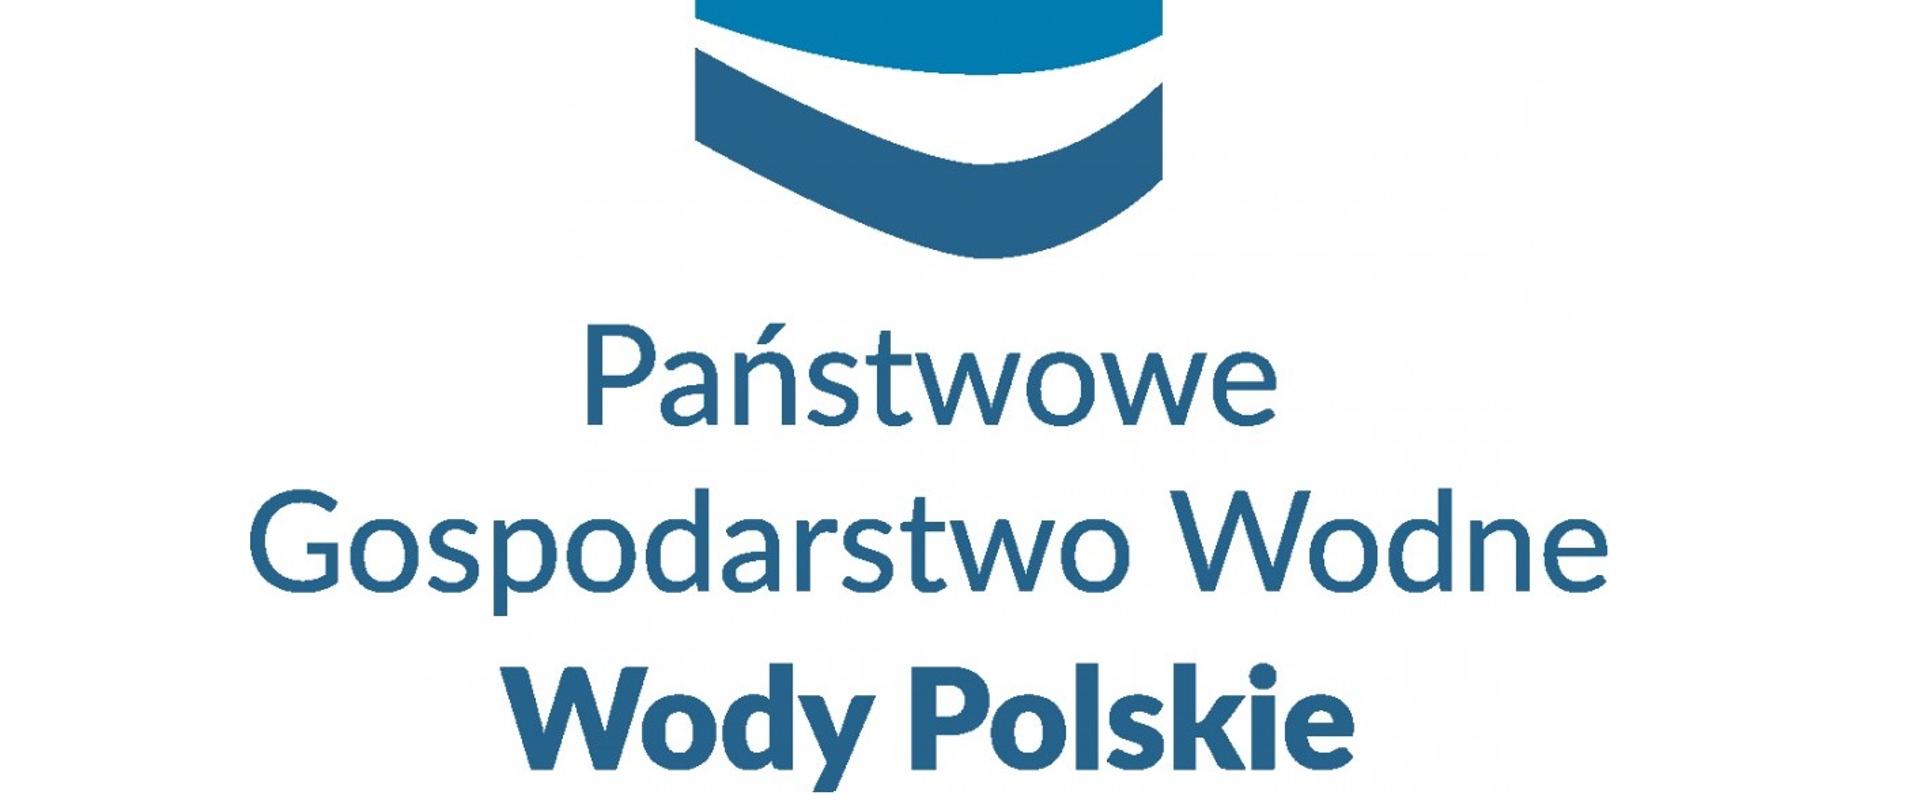 Państwowe Gospodarstwo Wodne Wody Polskie 